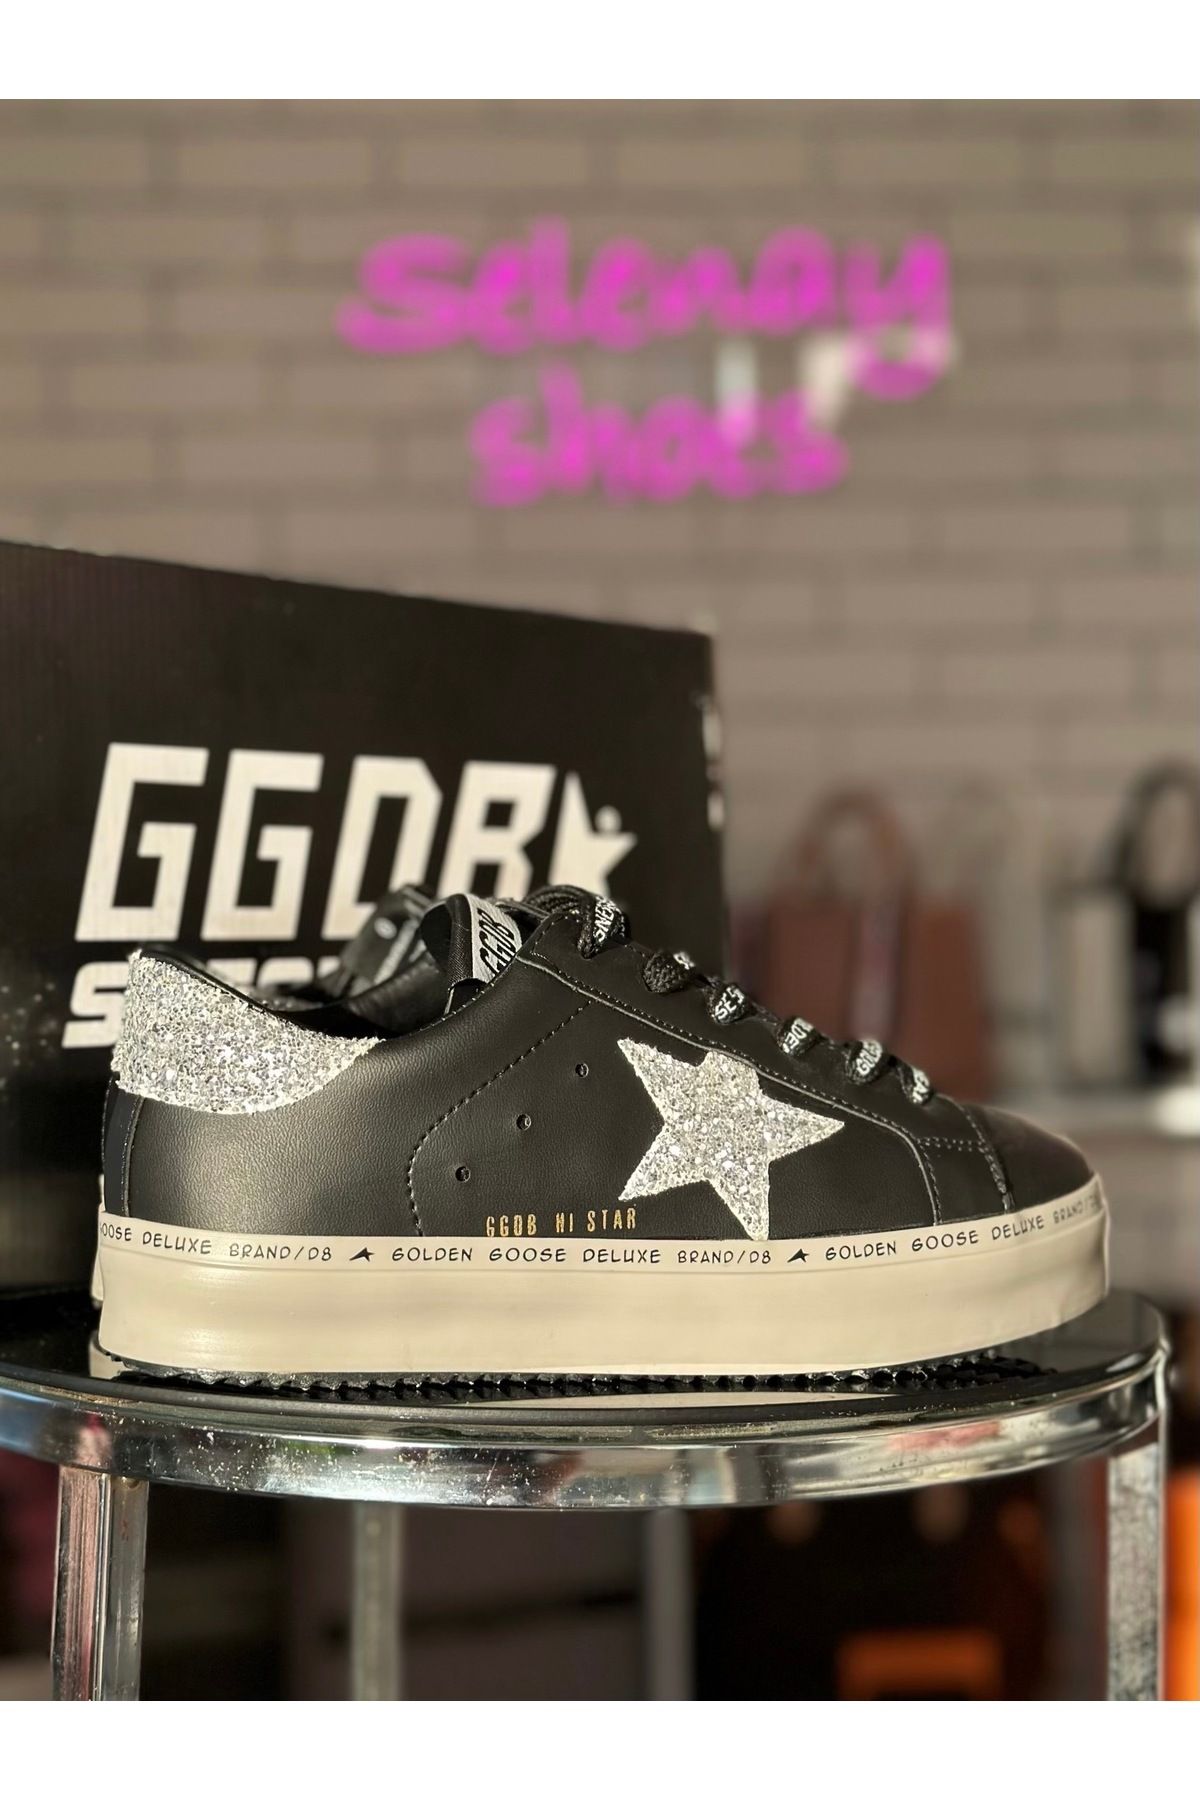 SELENAY BALTAÇ Parlak Yıldız ve yazı detaylı sneaker, bağcıkları yazılı ayakkabı